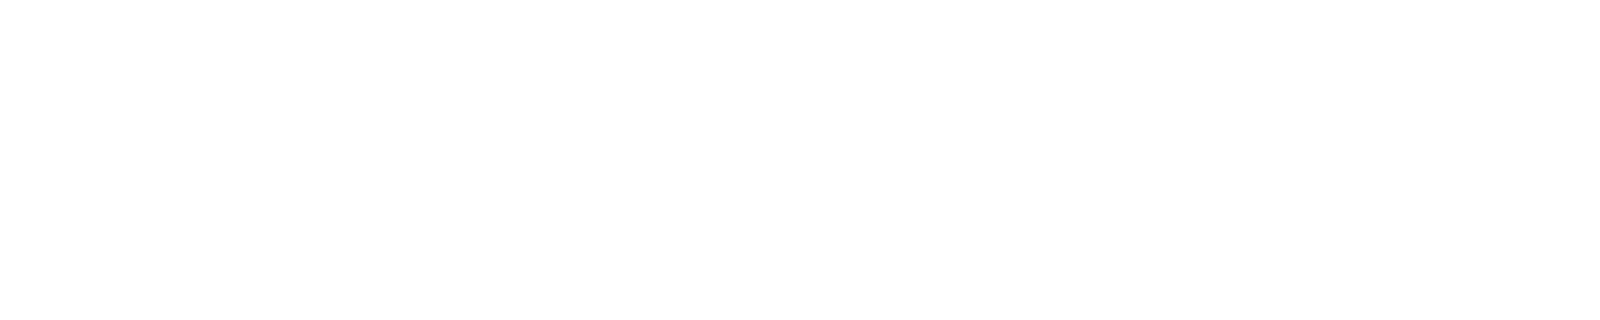 Rivian logo grand pour les fonds sombres (PNG transparent)